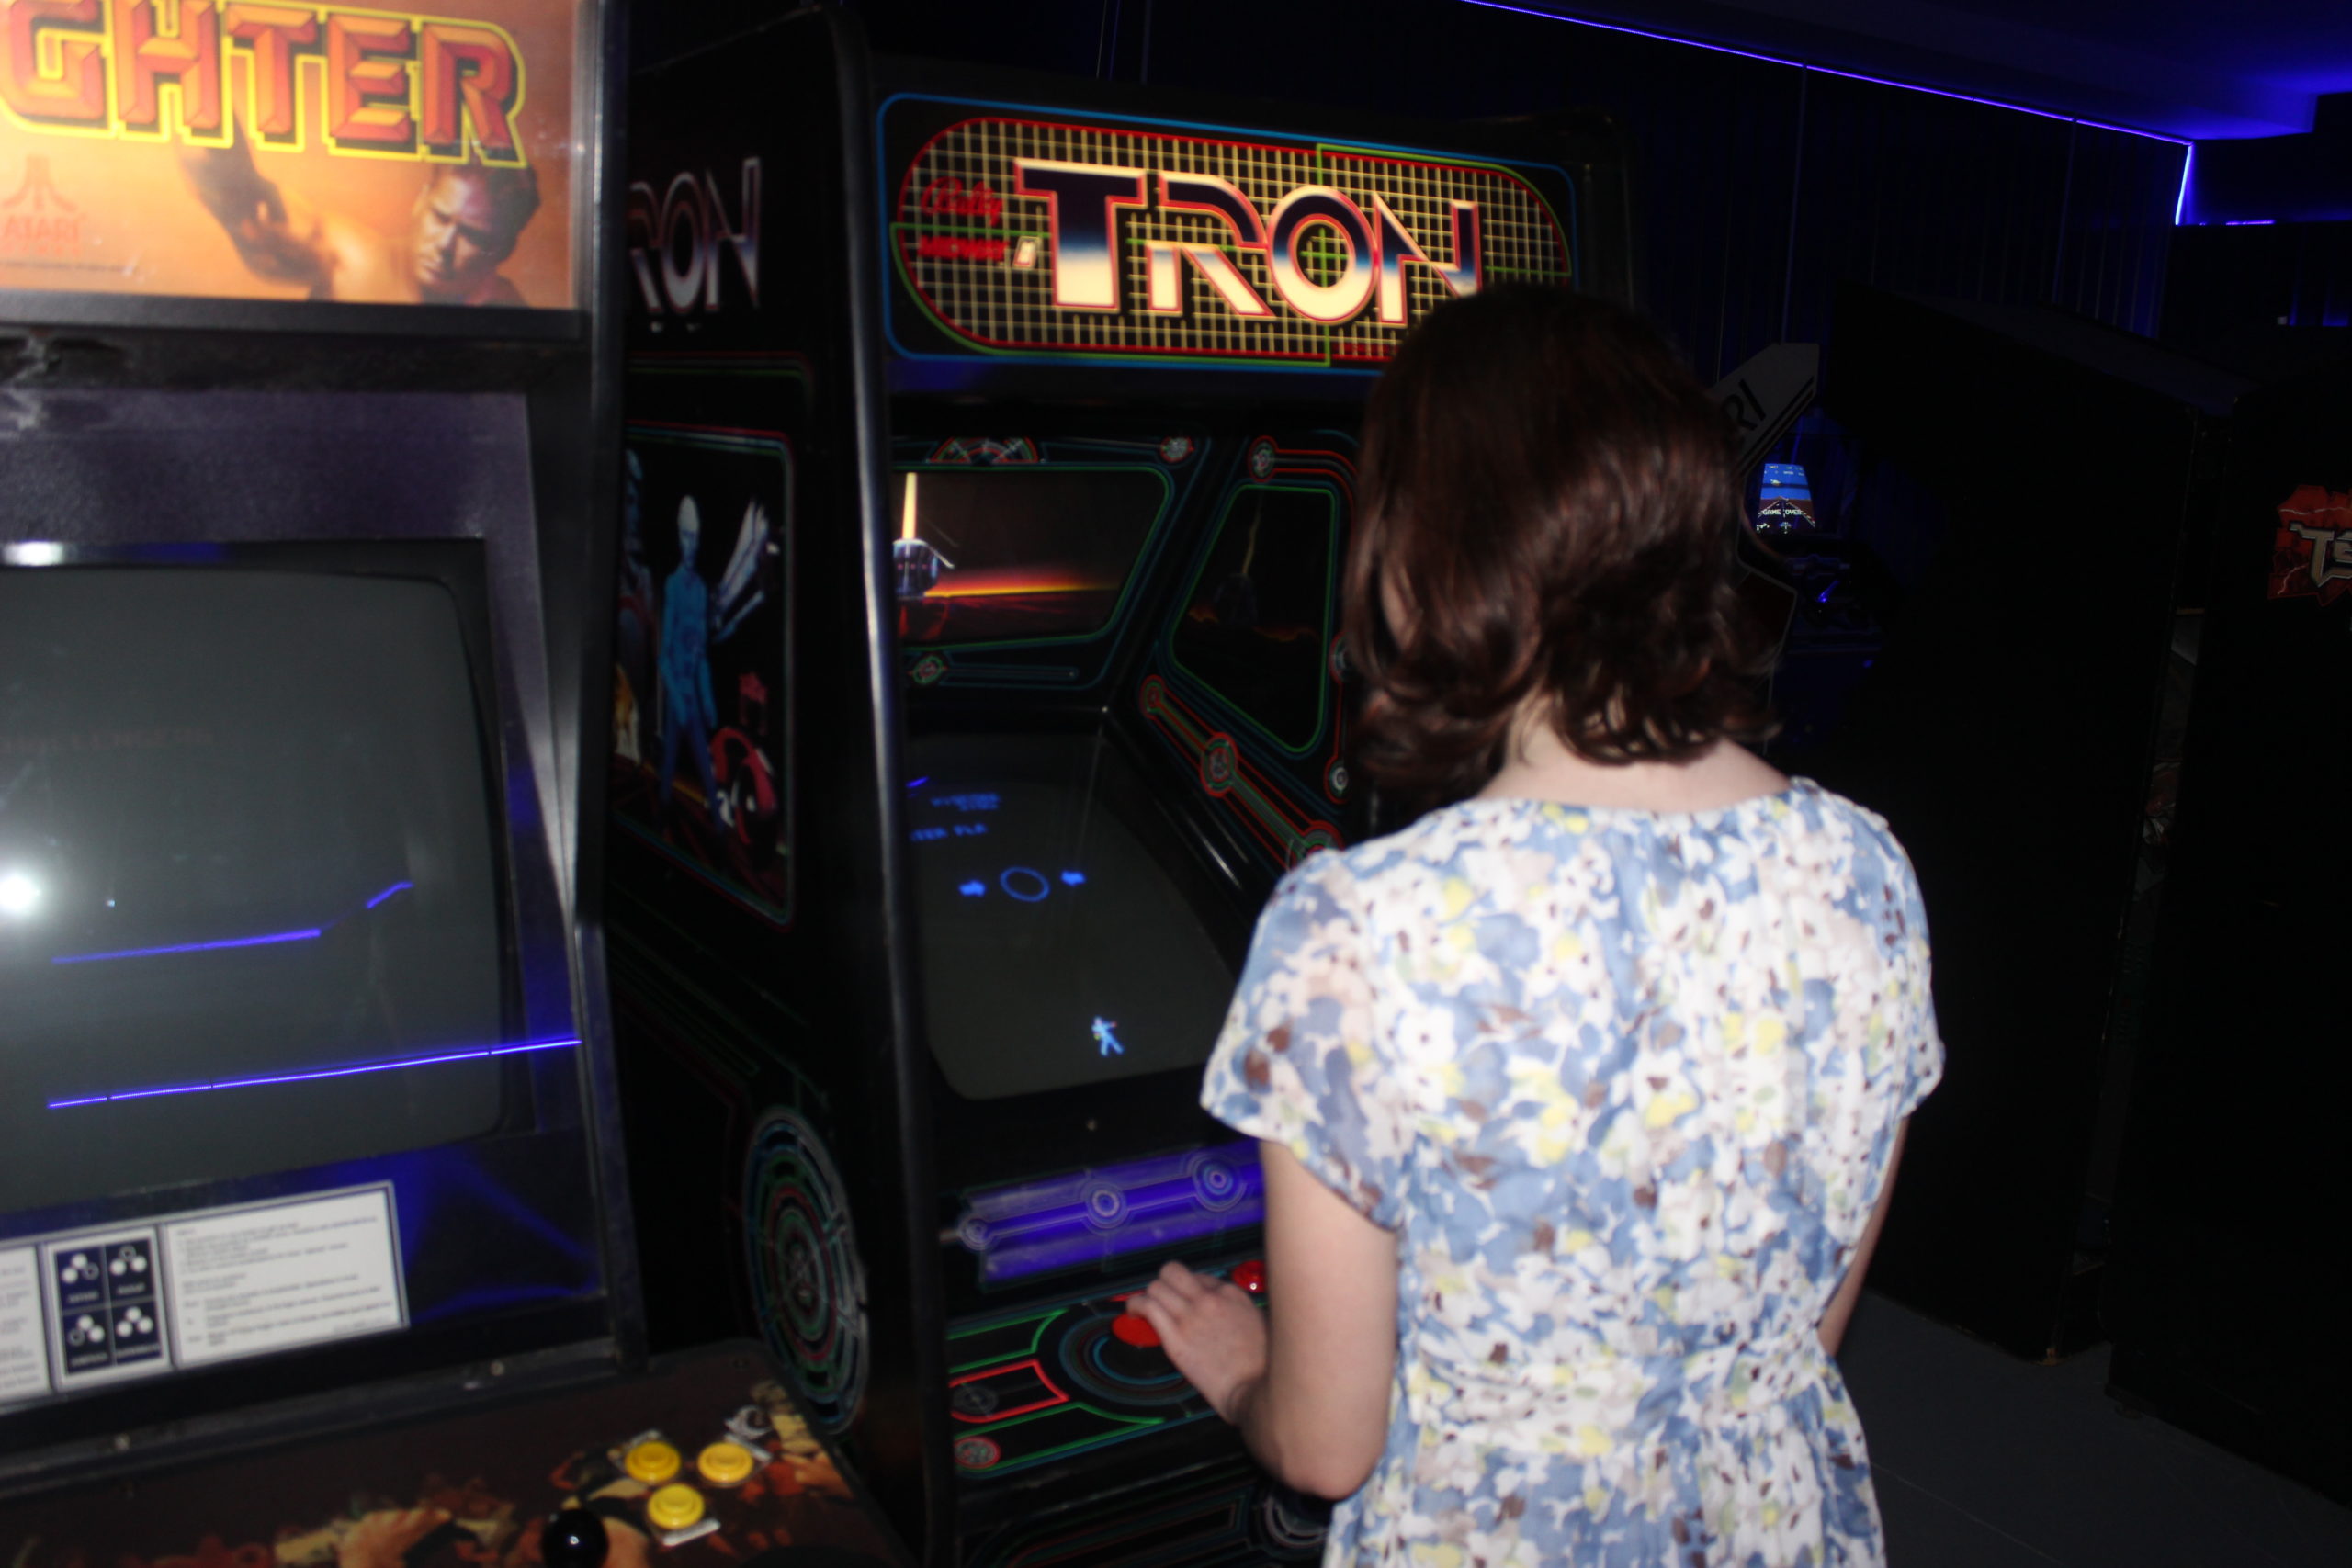 La borne d'arcade Tron est une véritable pièce d'histoire tant elle est rare